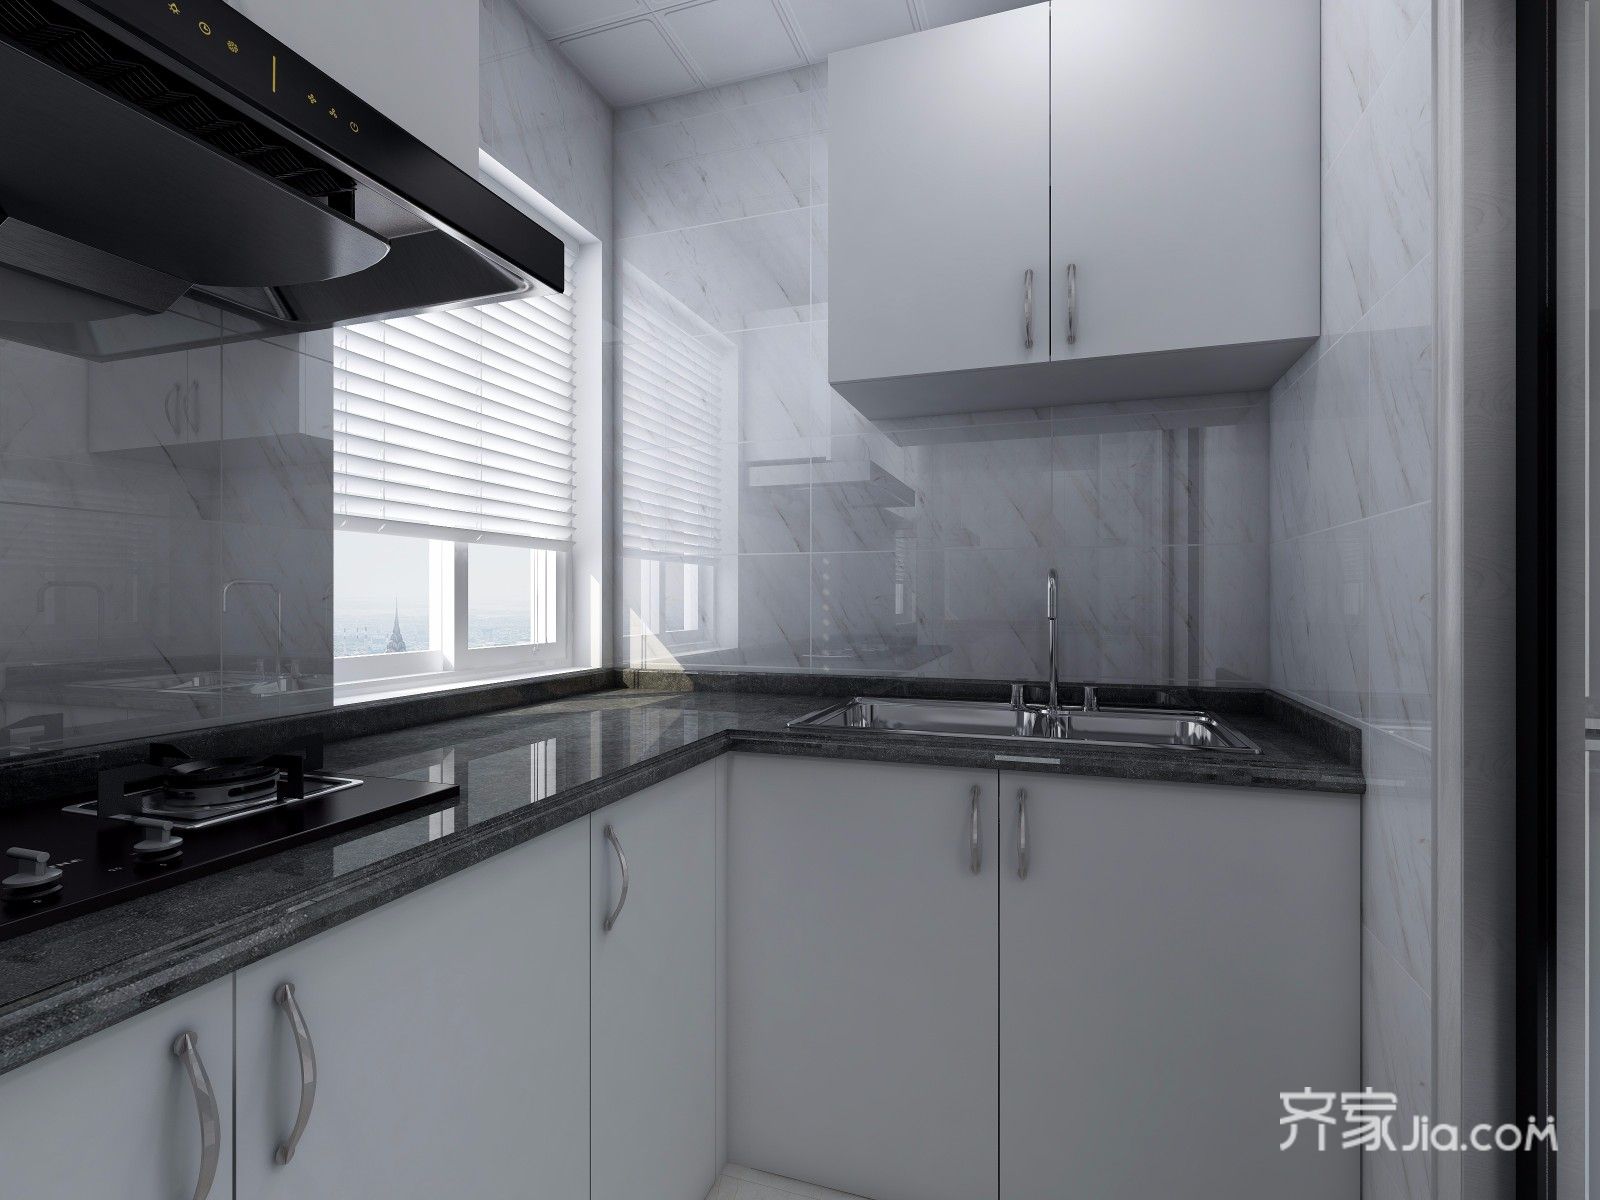 因为厨房采光不是很好,所以采用白色橱柜与黑色台面,使空间更明亮.